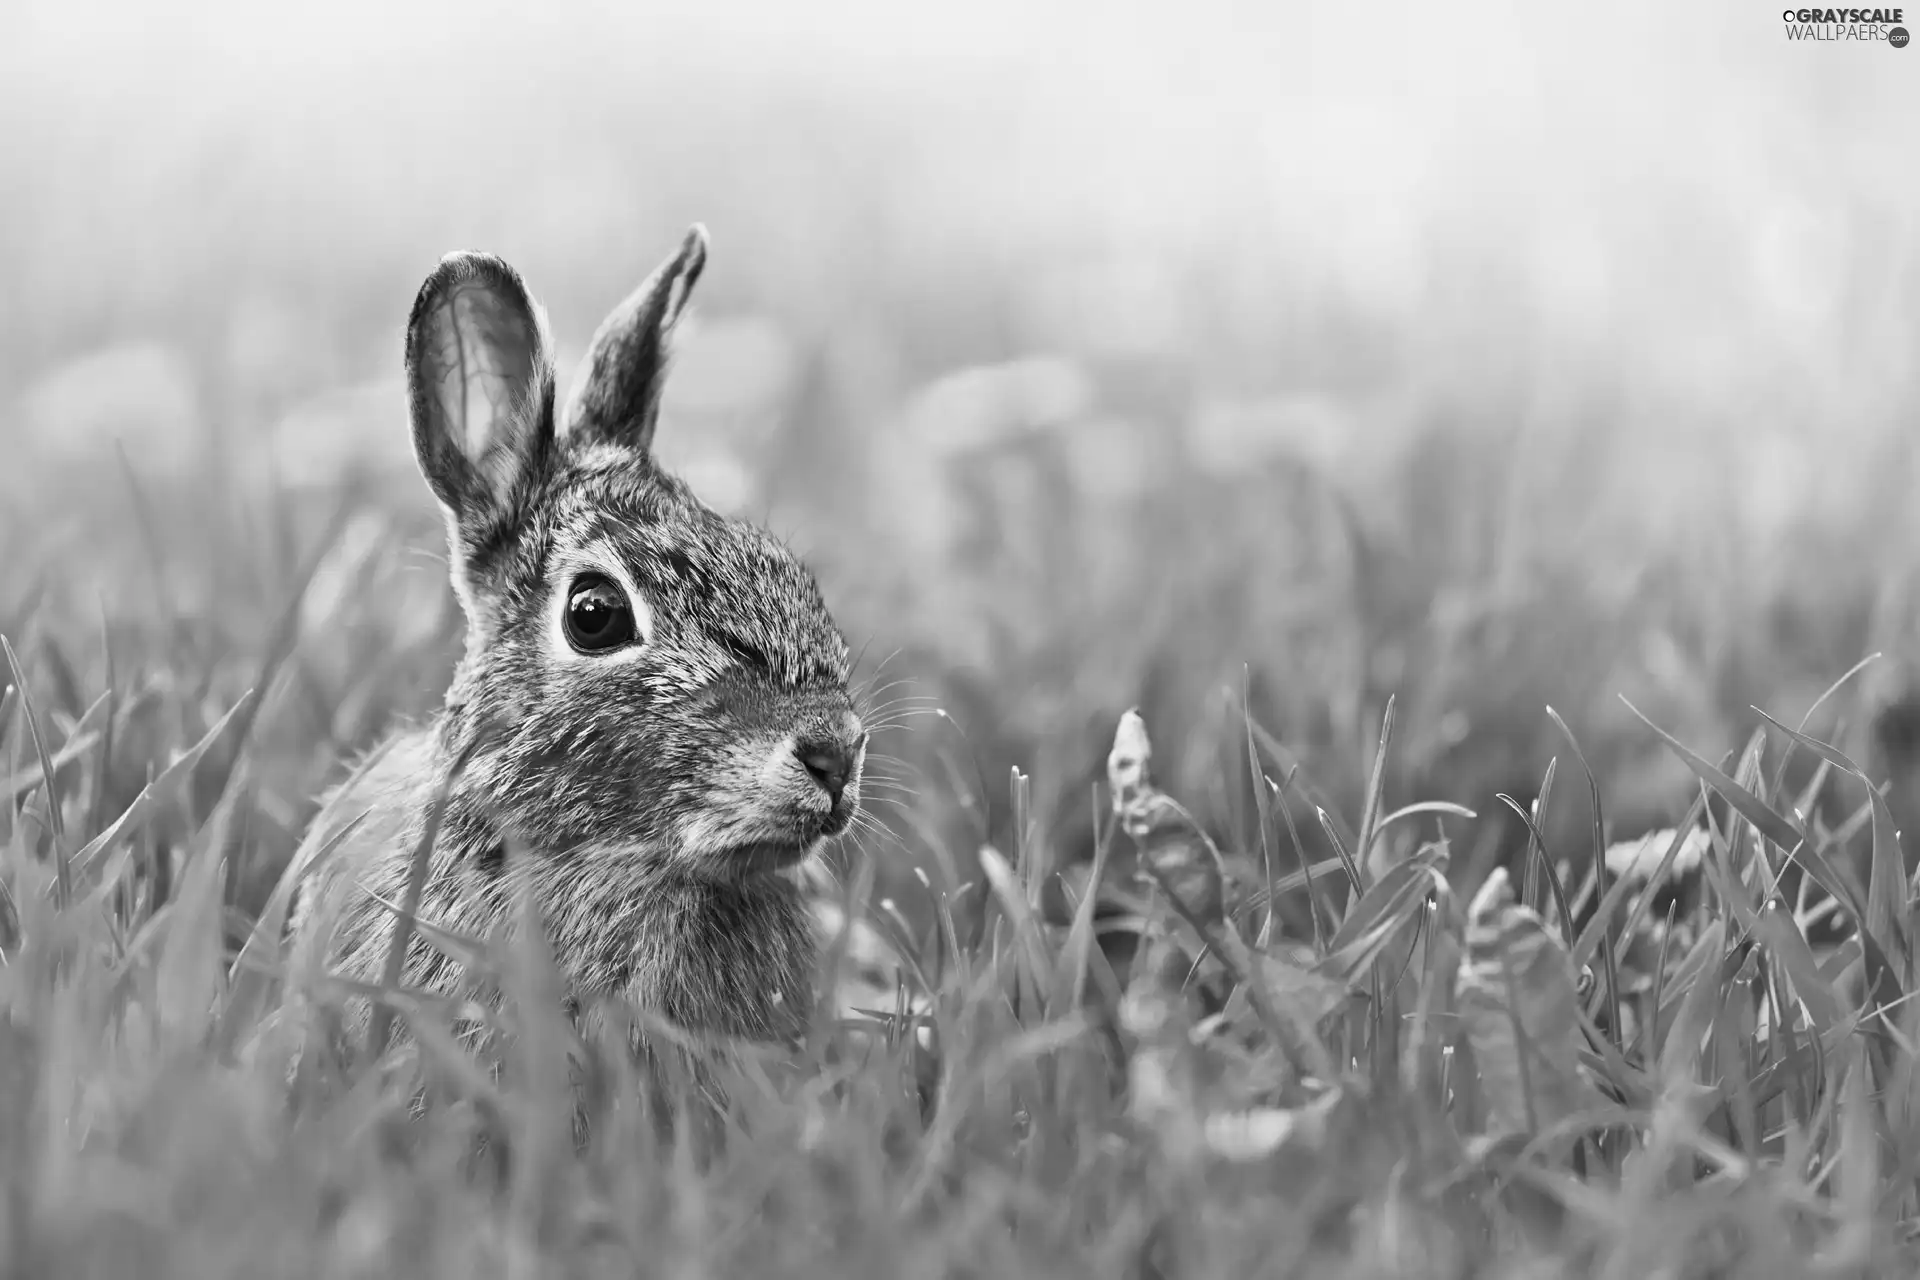 Rabbit, Stalked, ears, Meadow